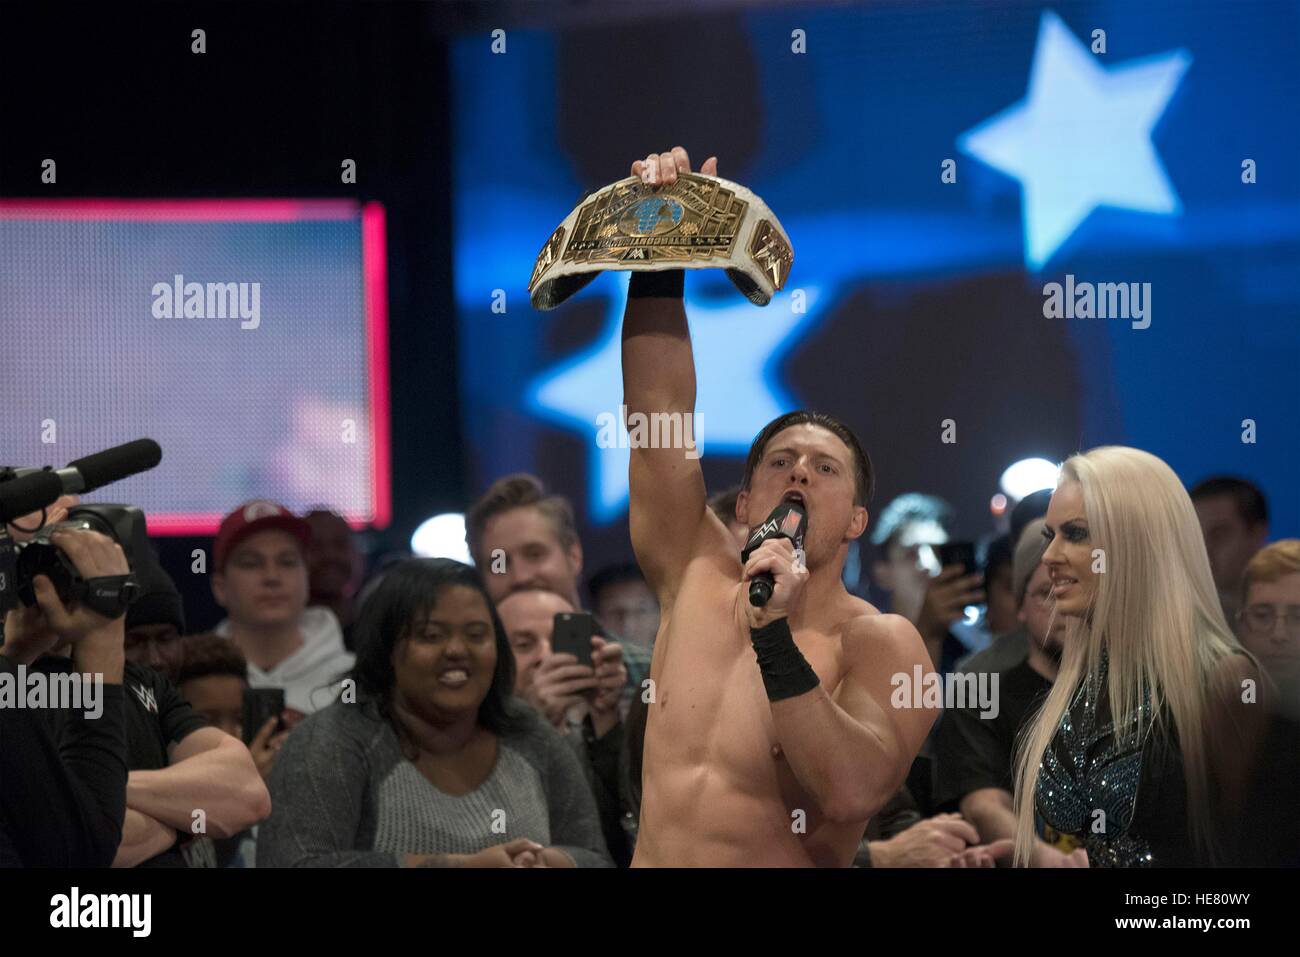 El ejecutante de WWE Miz sostiene una correa de campeonato después de un partido de lucha libre para el 14 tributo anual a las tropas evento en el Verizon Center el 13 de diciembre de 2016 en Washington, DC. Foto de stock